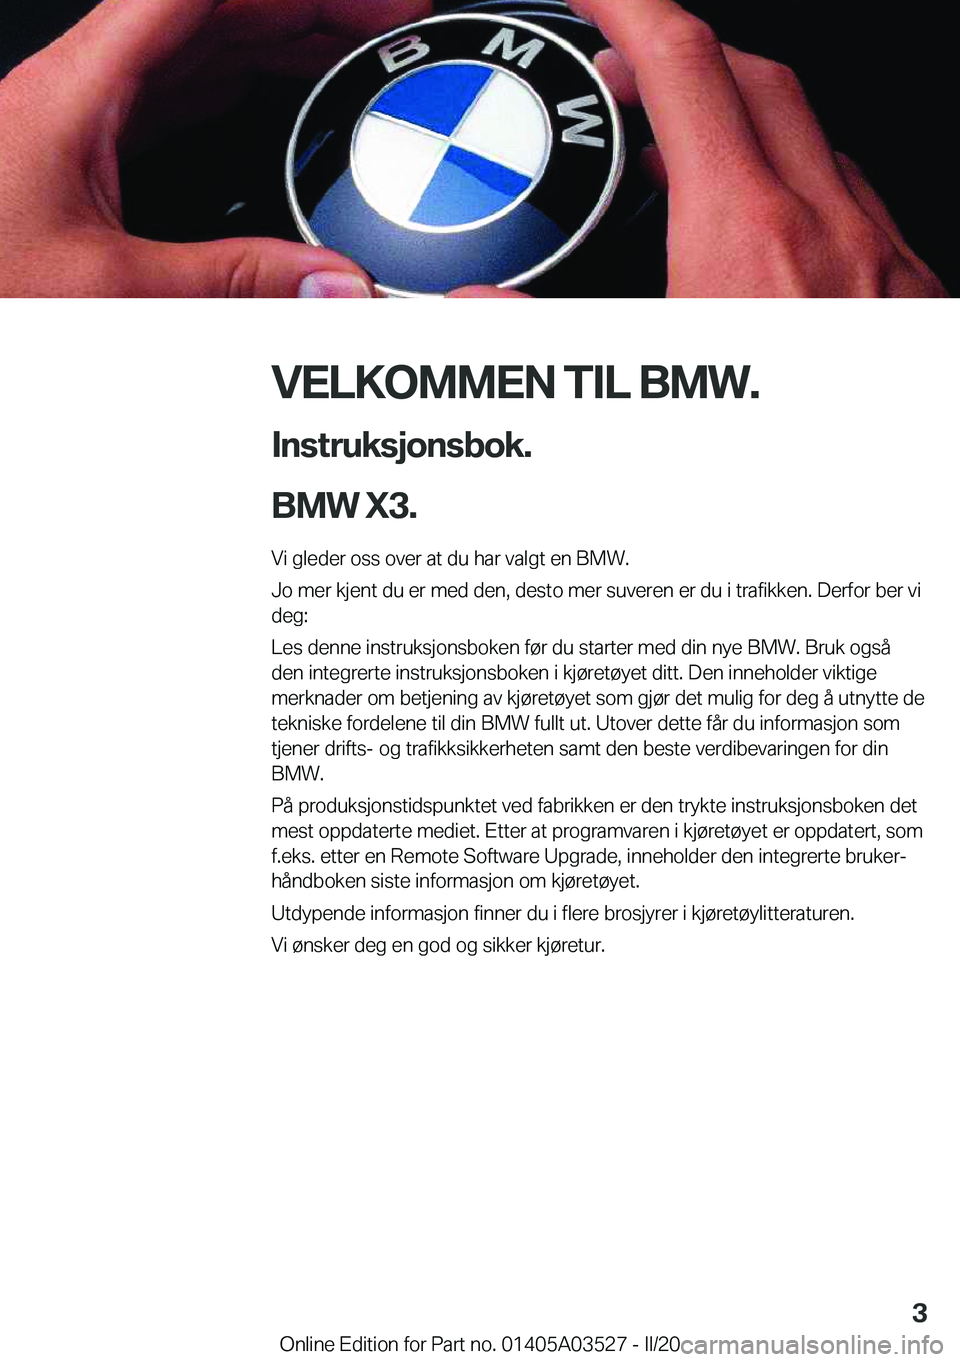 BMW X3 2020  InstruksjonsbØker (in Norwegian) �V�E�L�K�O�M�M�E�N��T�I�L��B�M�W�.�I�n�s�t�r�u�k�s�j�o�n�s�b�o�k�.
�B�M�W��X�3�.
�V�i��g�l�e�d�e�r��o�s�s��o�v�e�r��a�t��d�u��h�a�r��v�a�l�g�t��e�n��B�M�W�.
�J�o��m�e�r��k�j�e�n�t��d�u�